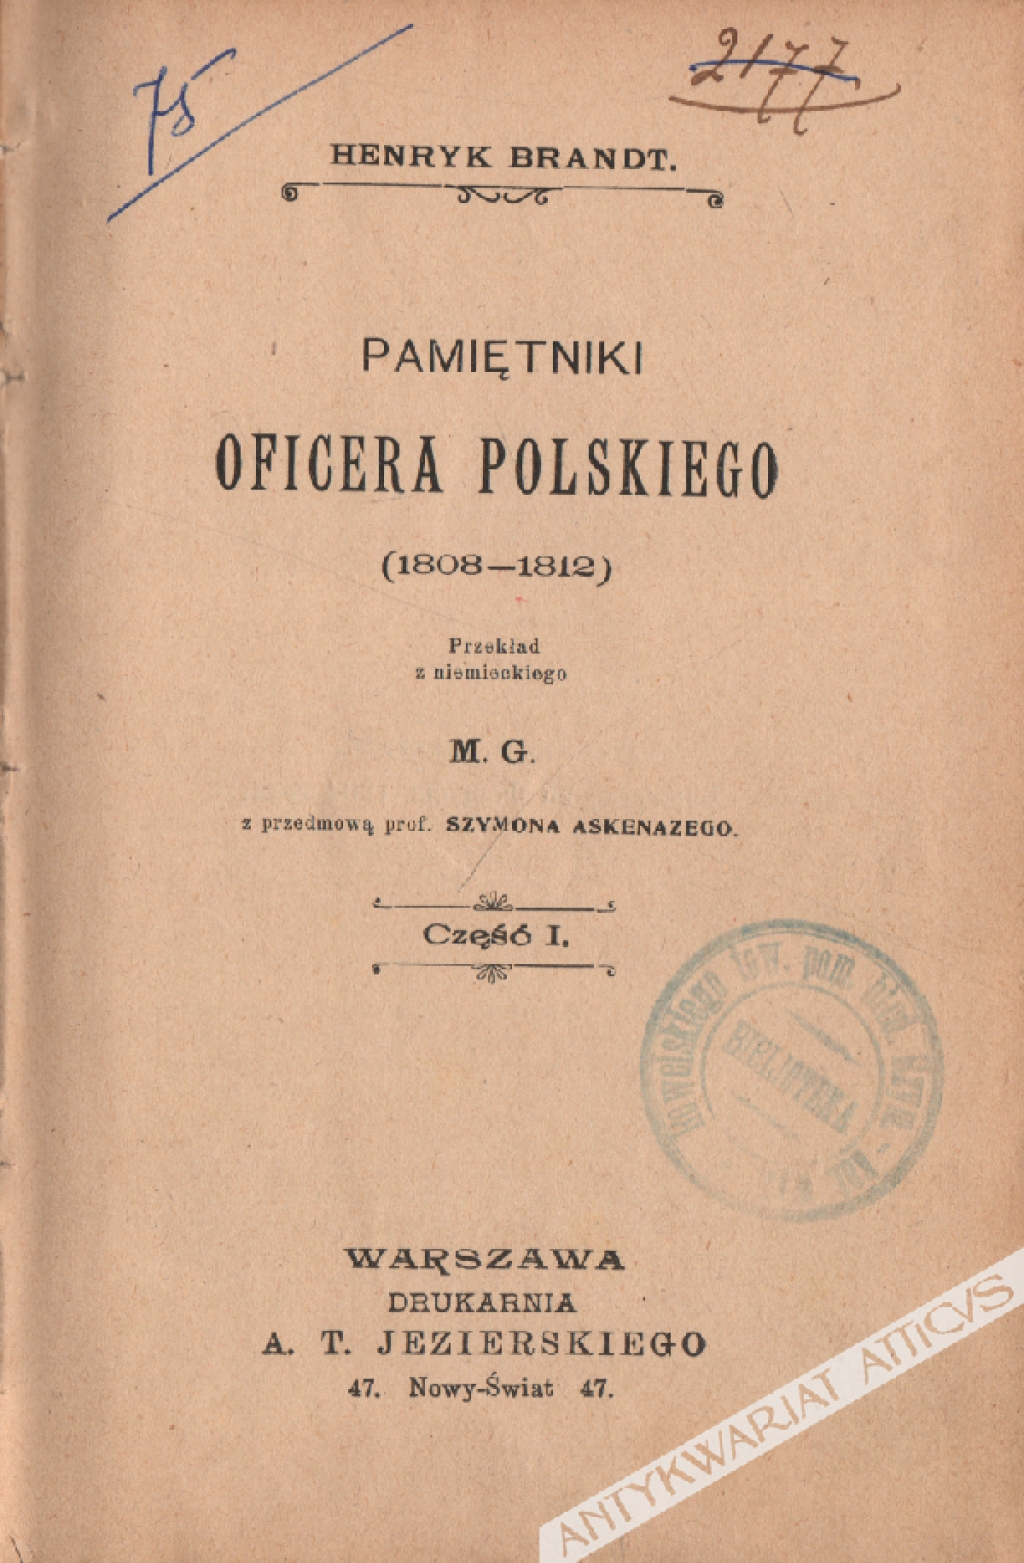 Pamiętniki oficera polskiego (1808-1812), t. I-III

